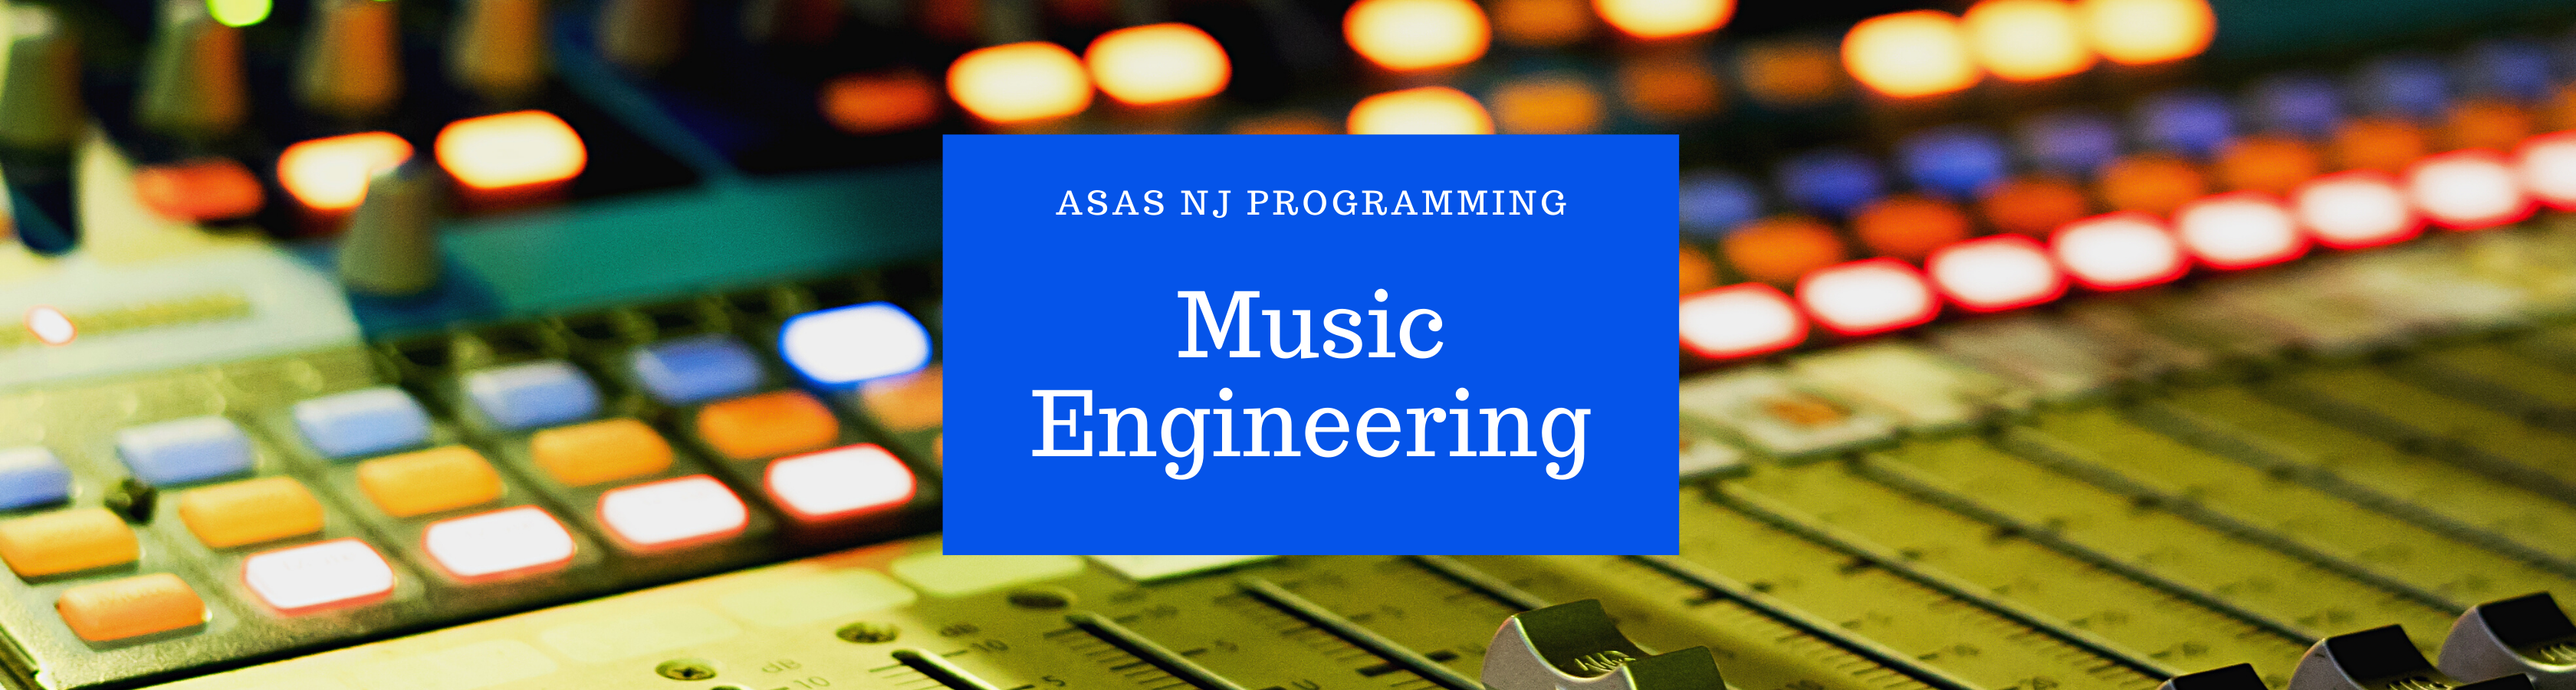 Music Engineering 2